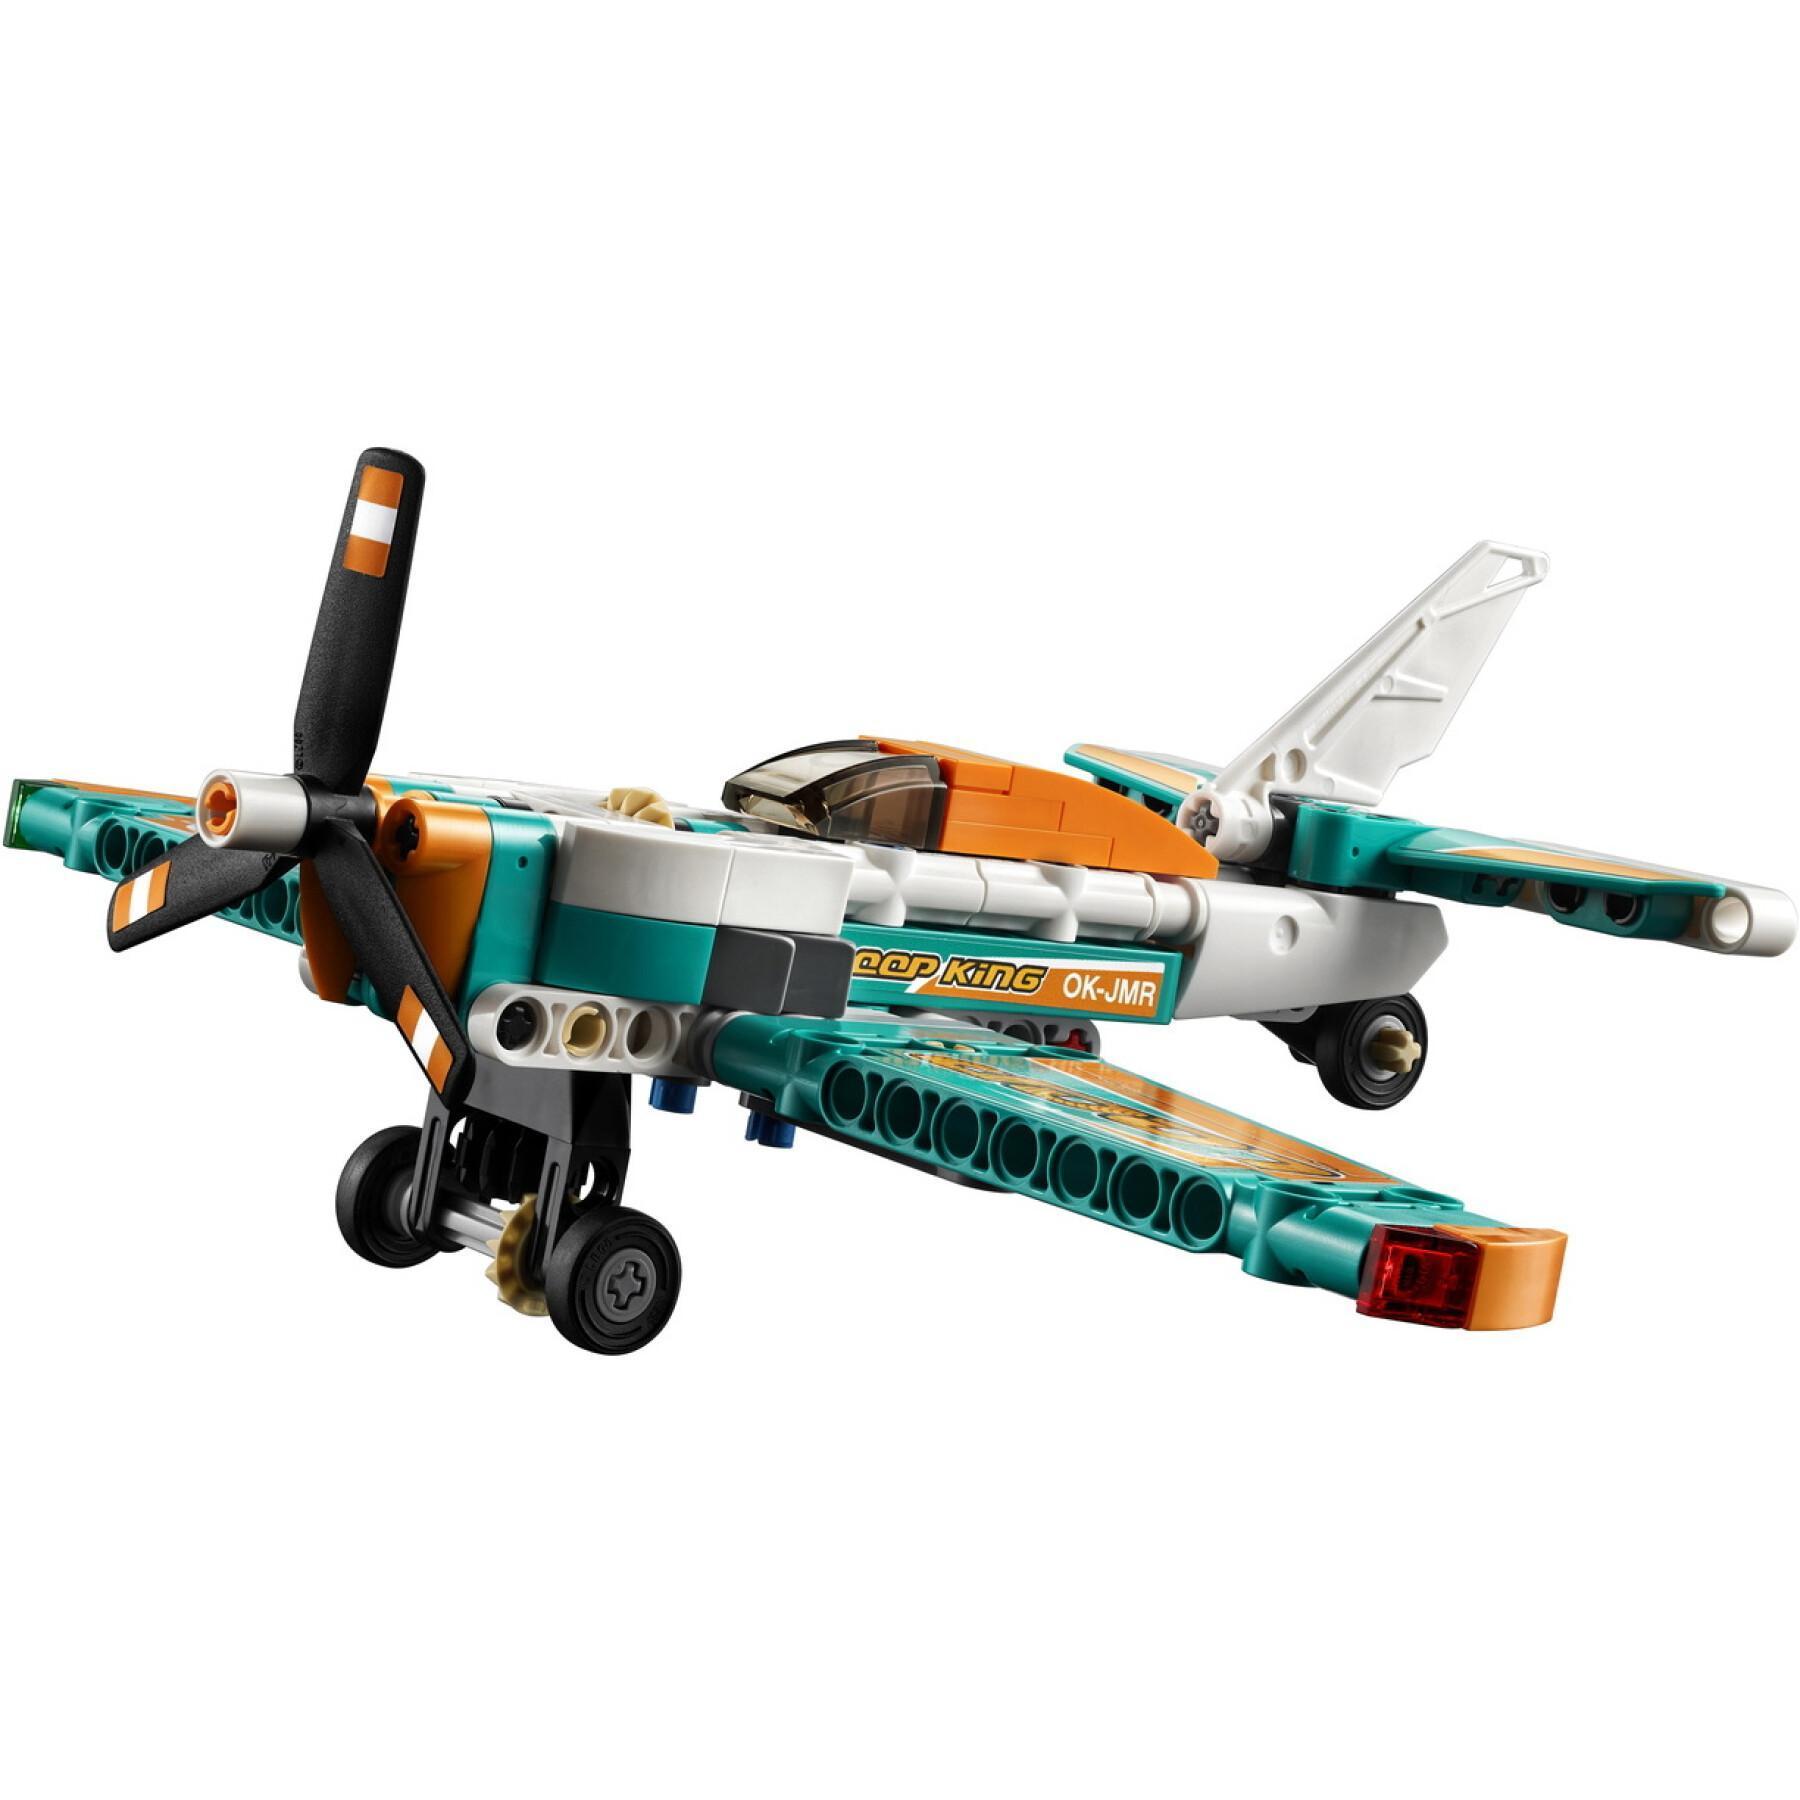 Rennflugzeug Lego Technic